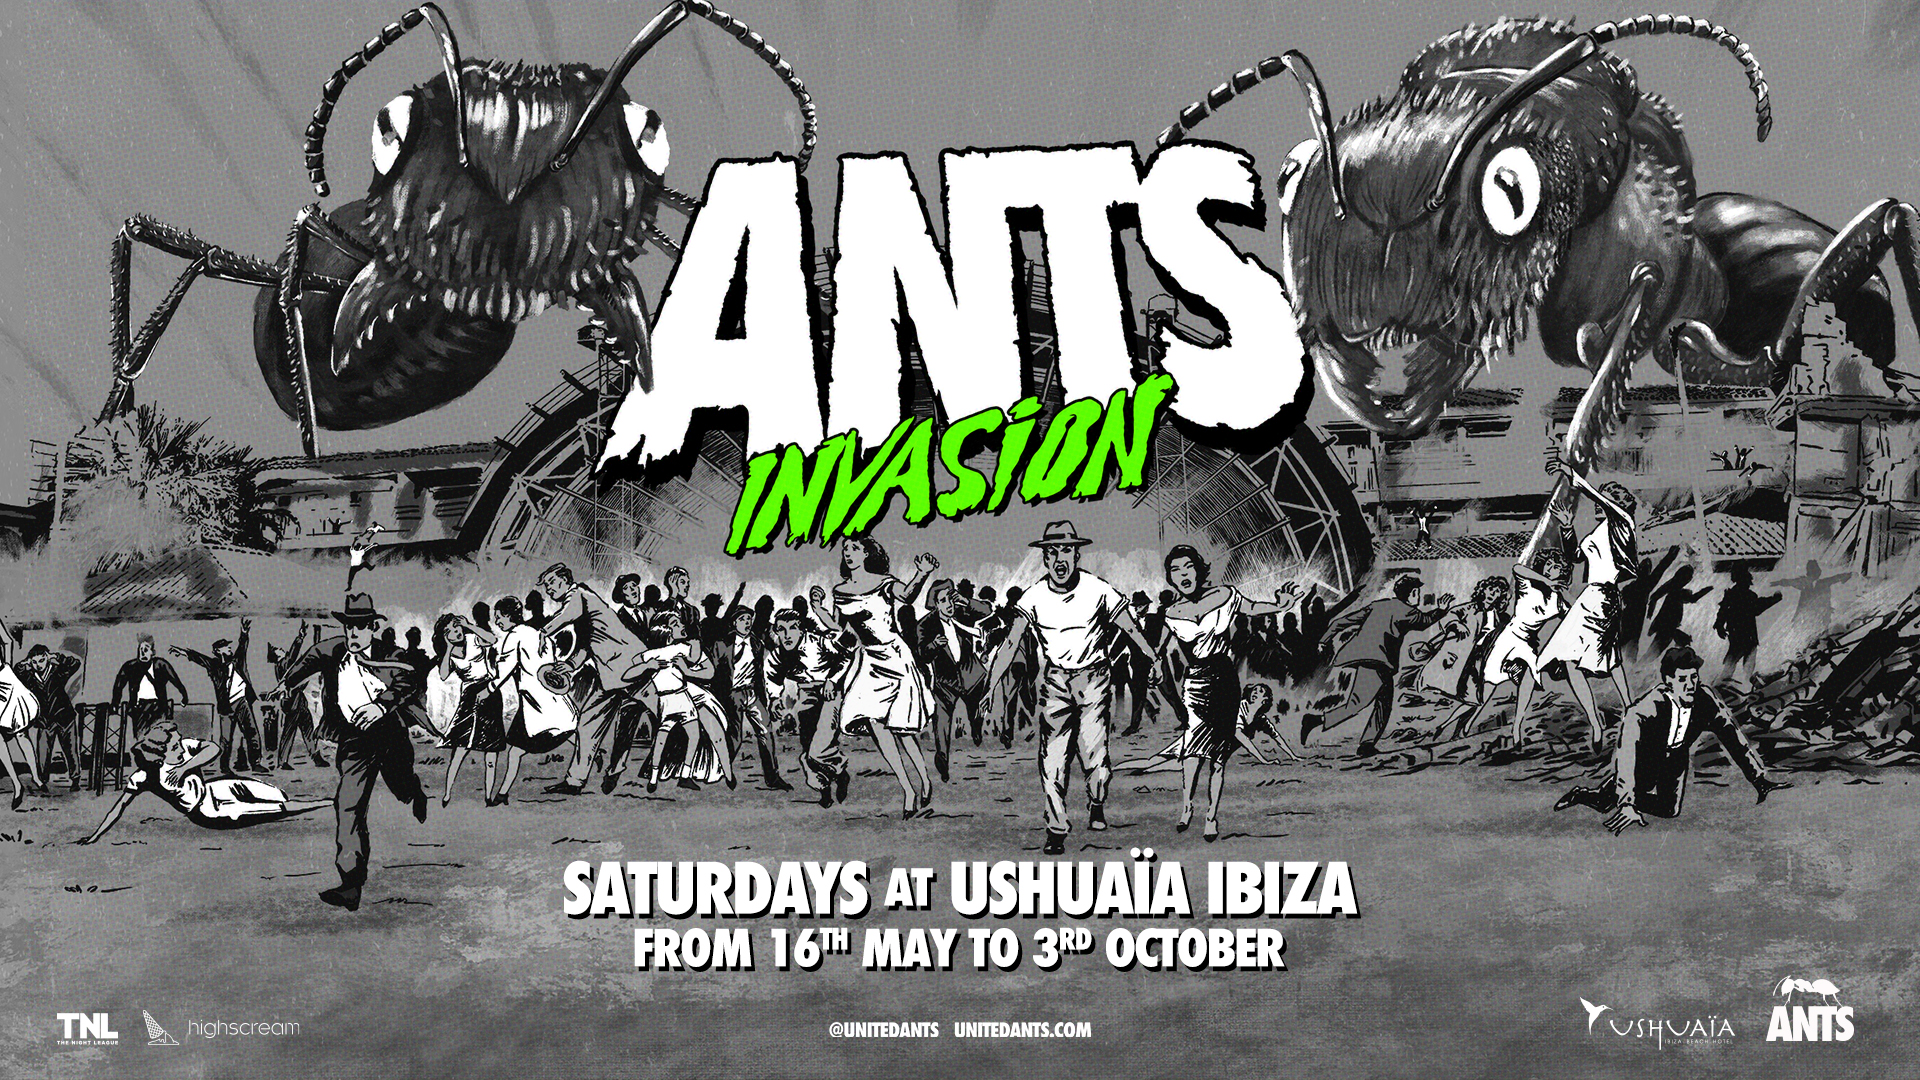 ANTS-INVASION-EVENT